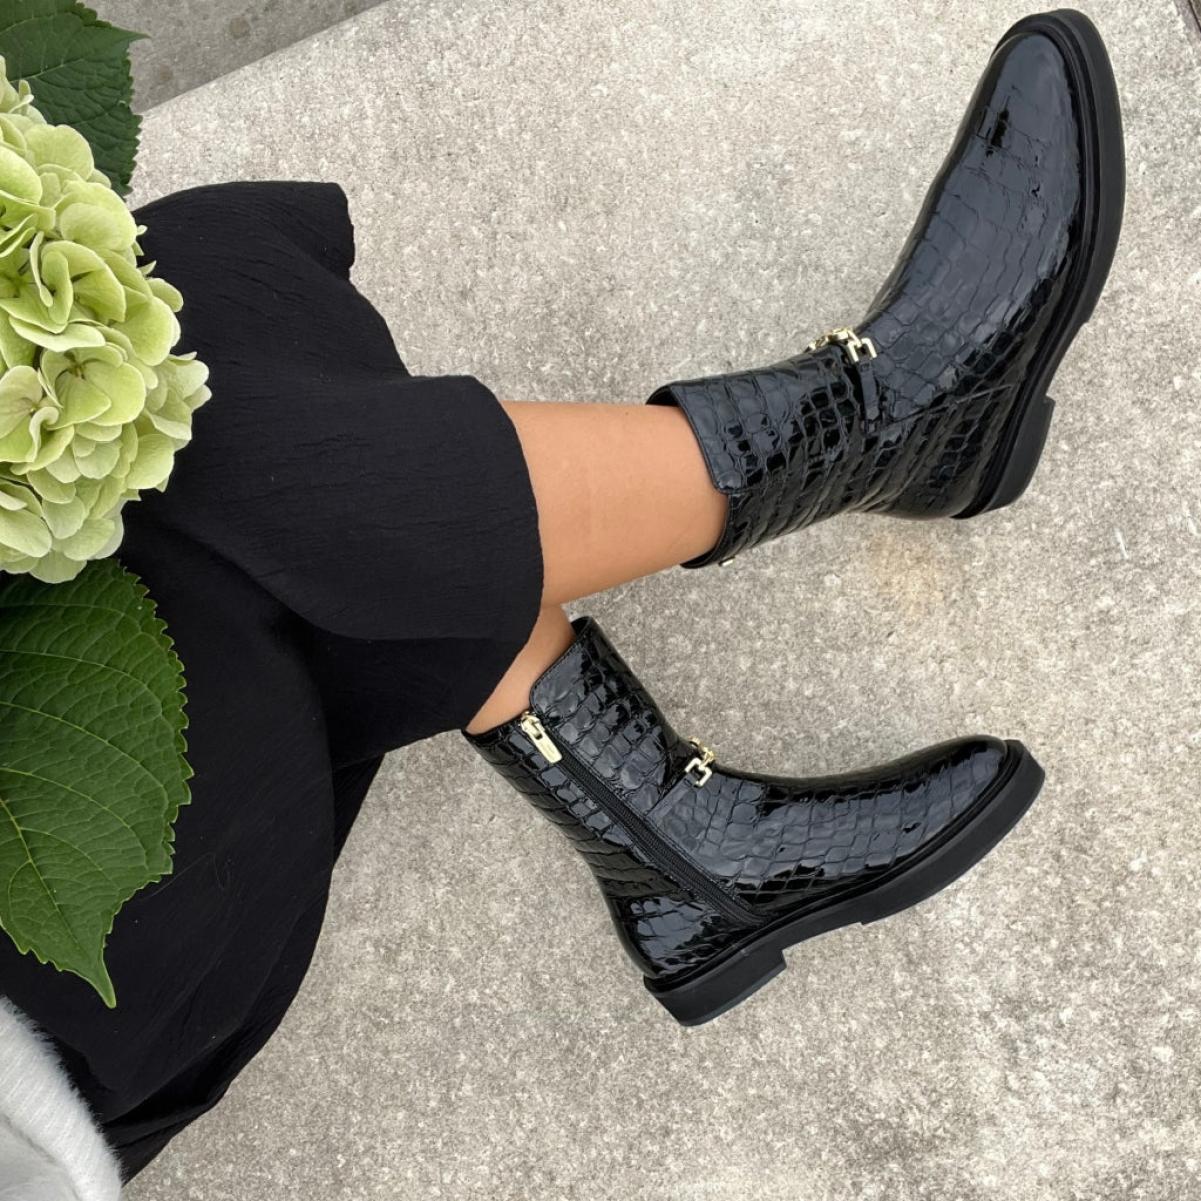 A Miracle Black - Black Ankle Boots Copenhagen Shoes Cut-Price Women - 1